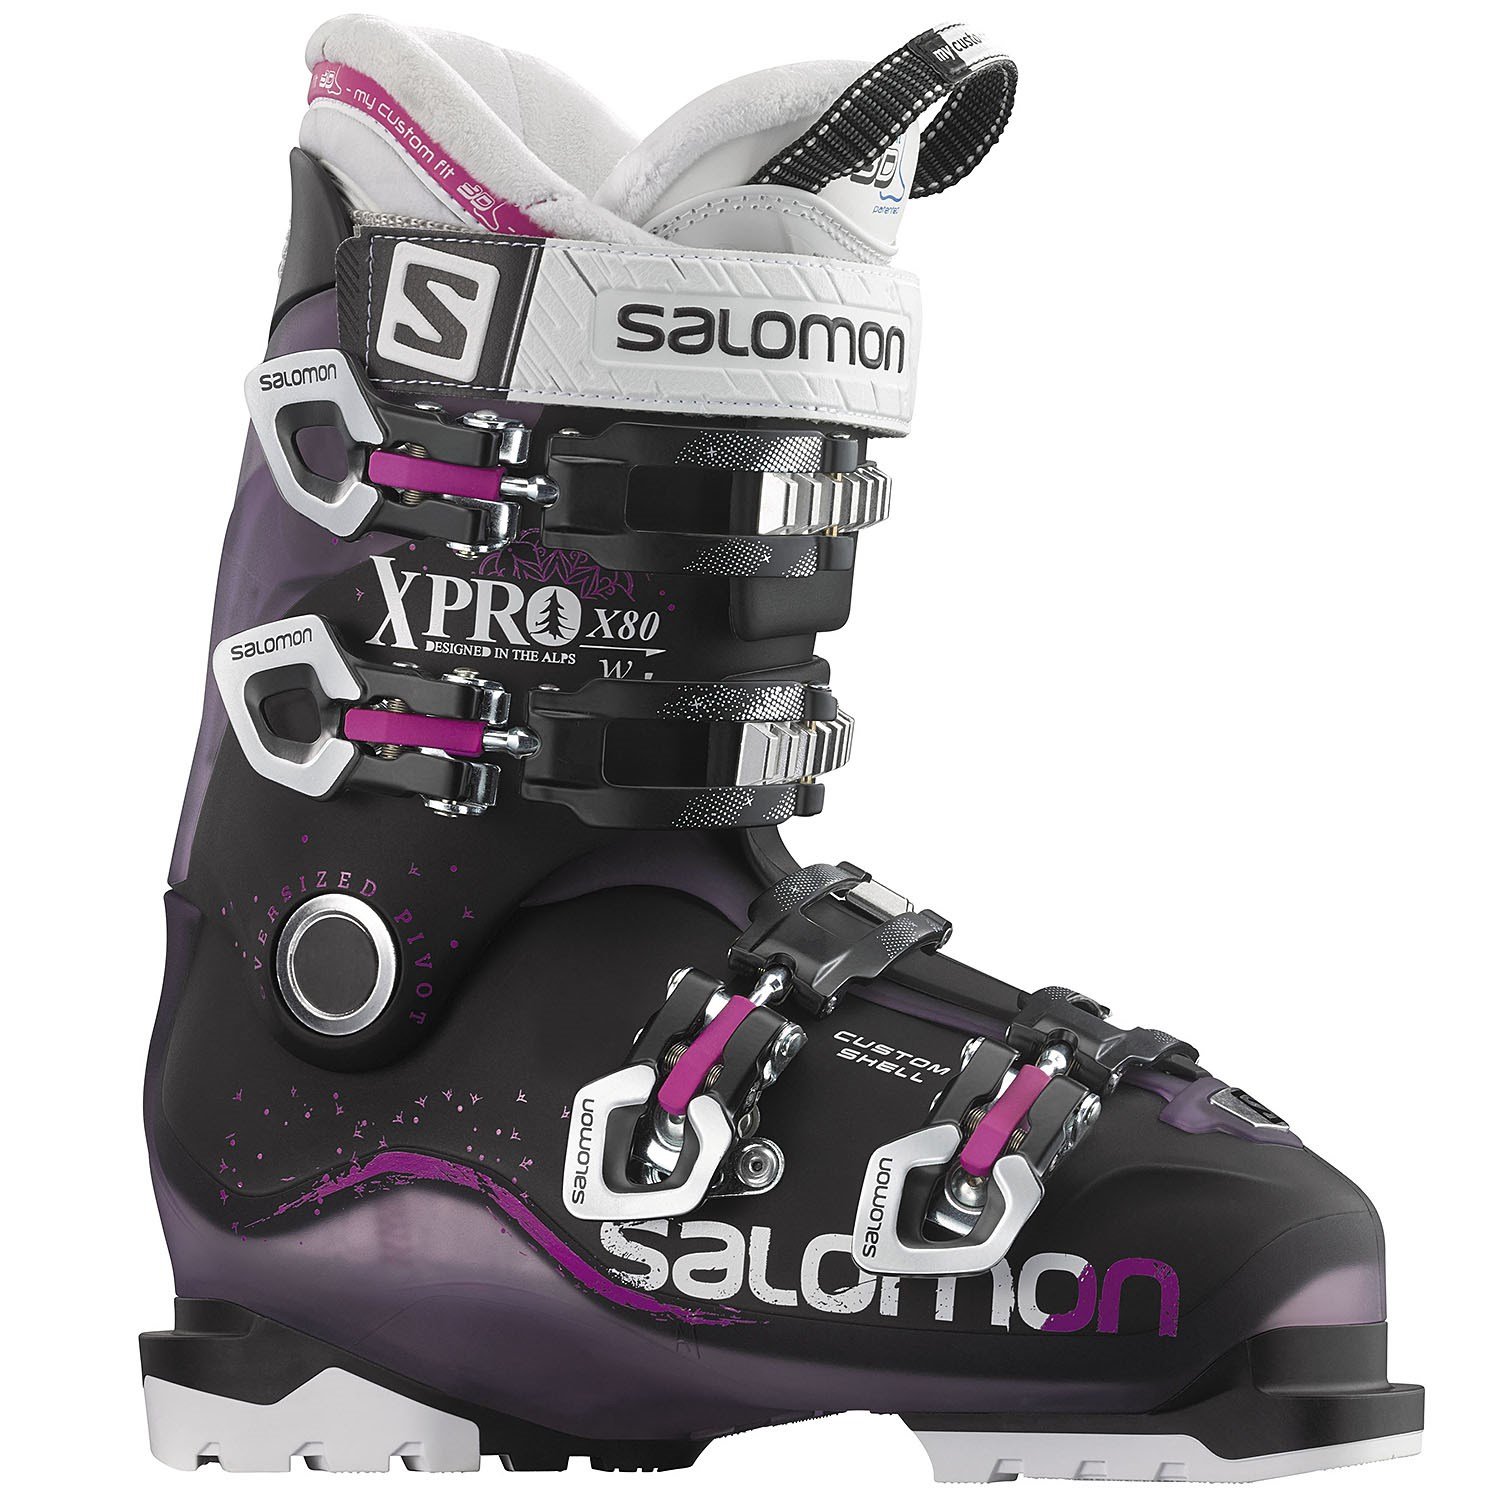 speelgoed Verbeelding Polijsten Salomon X Pro X 80 Ski Boots - Women's 2016 | evo